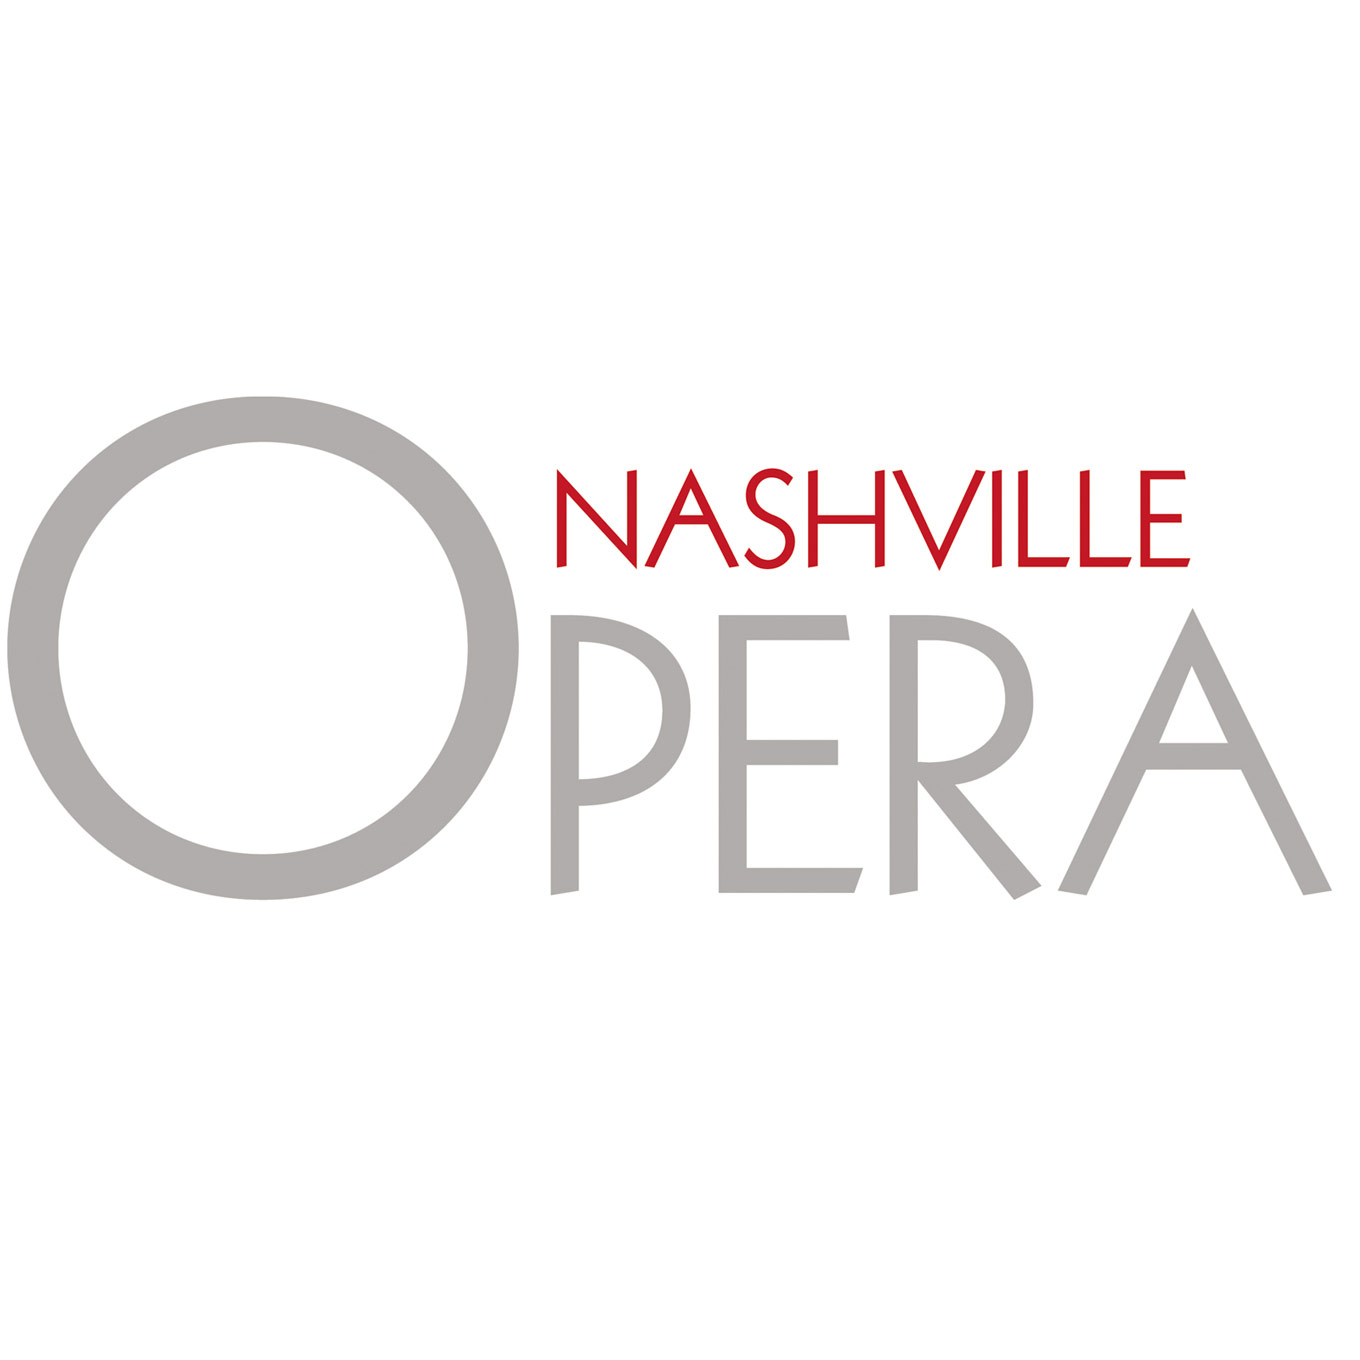 Nashville Opera